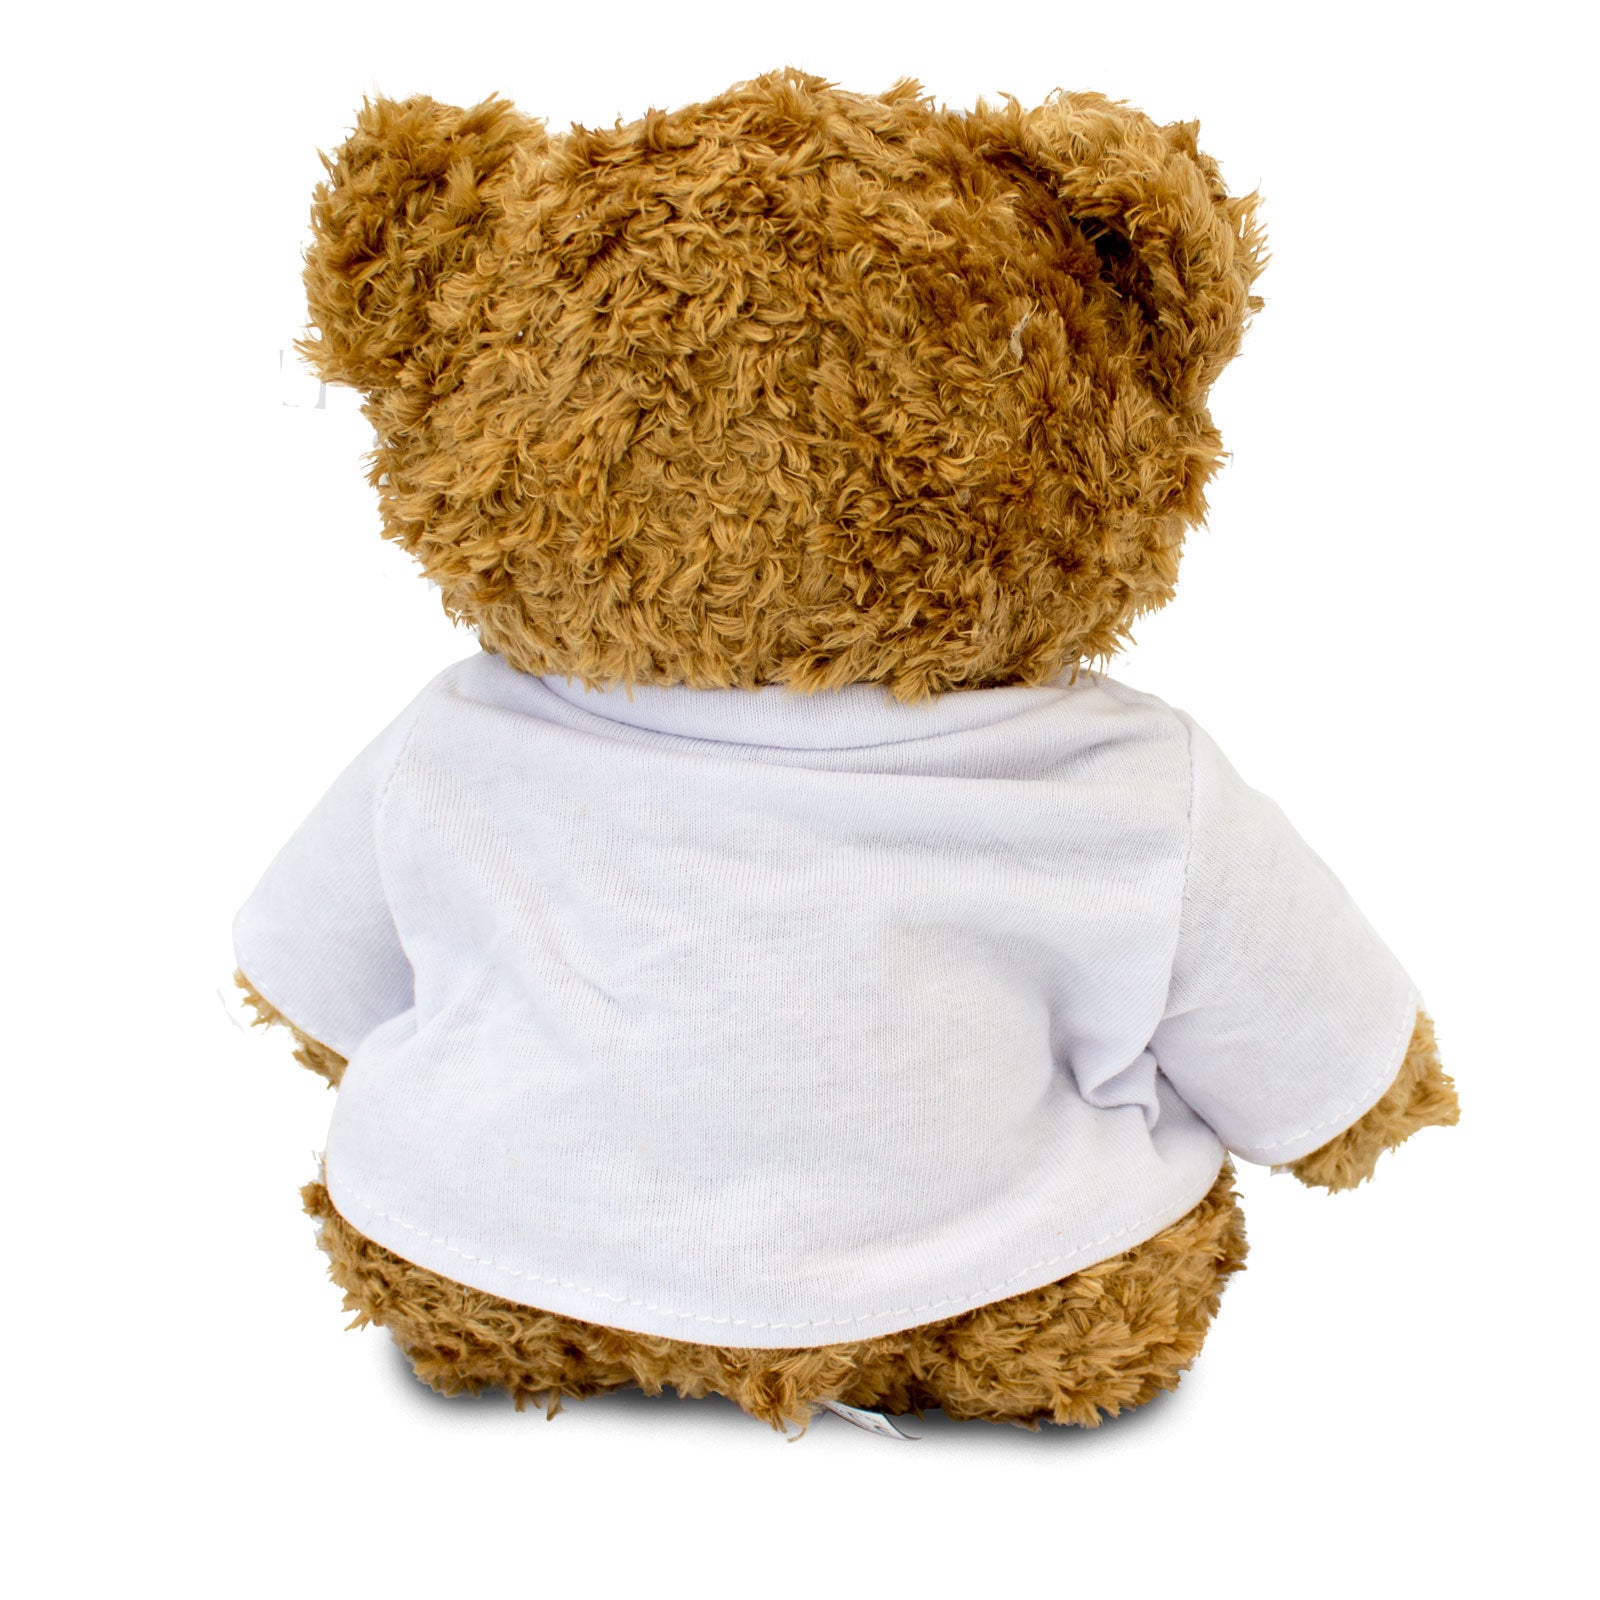 Get Well Soon Finn - Teddy Bear